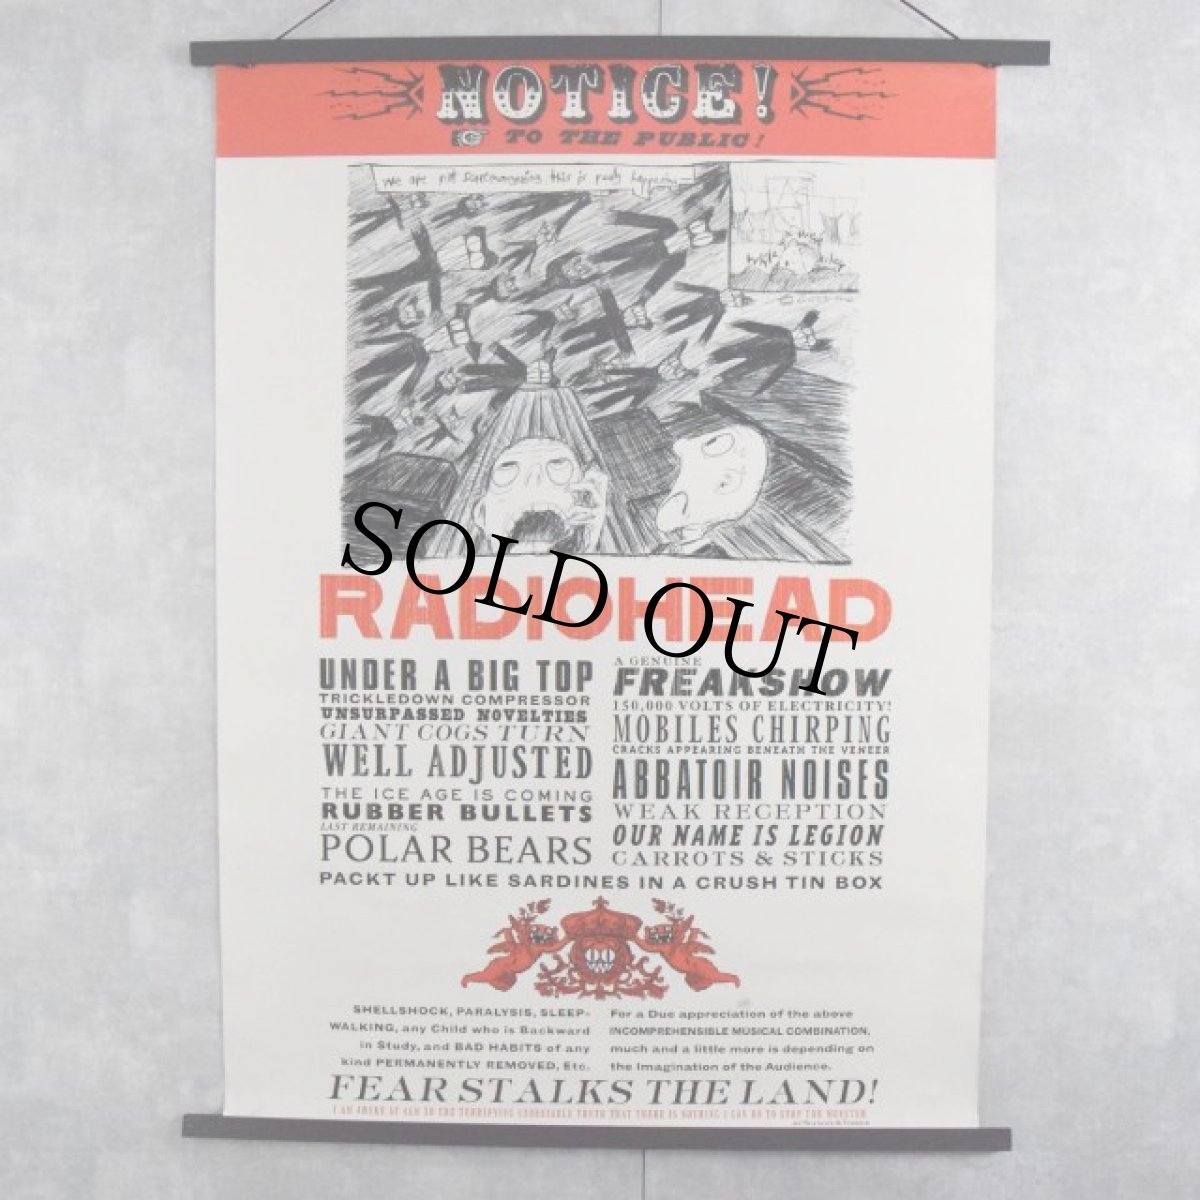 画像1: 2001 RADIOHEAD "Notice To the Public" Rock band tour Poster (1)